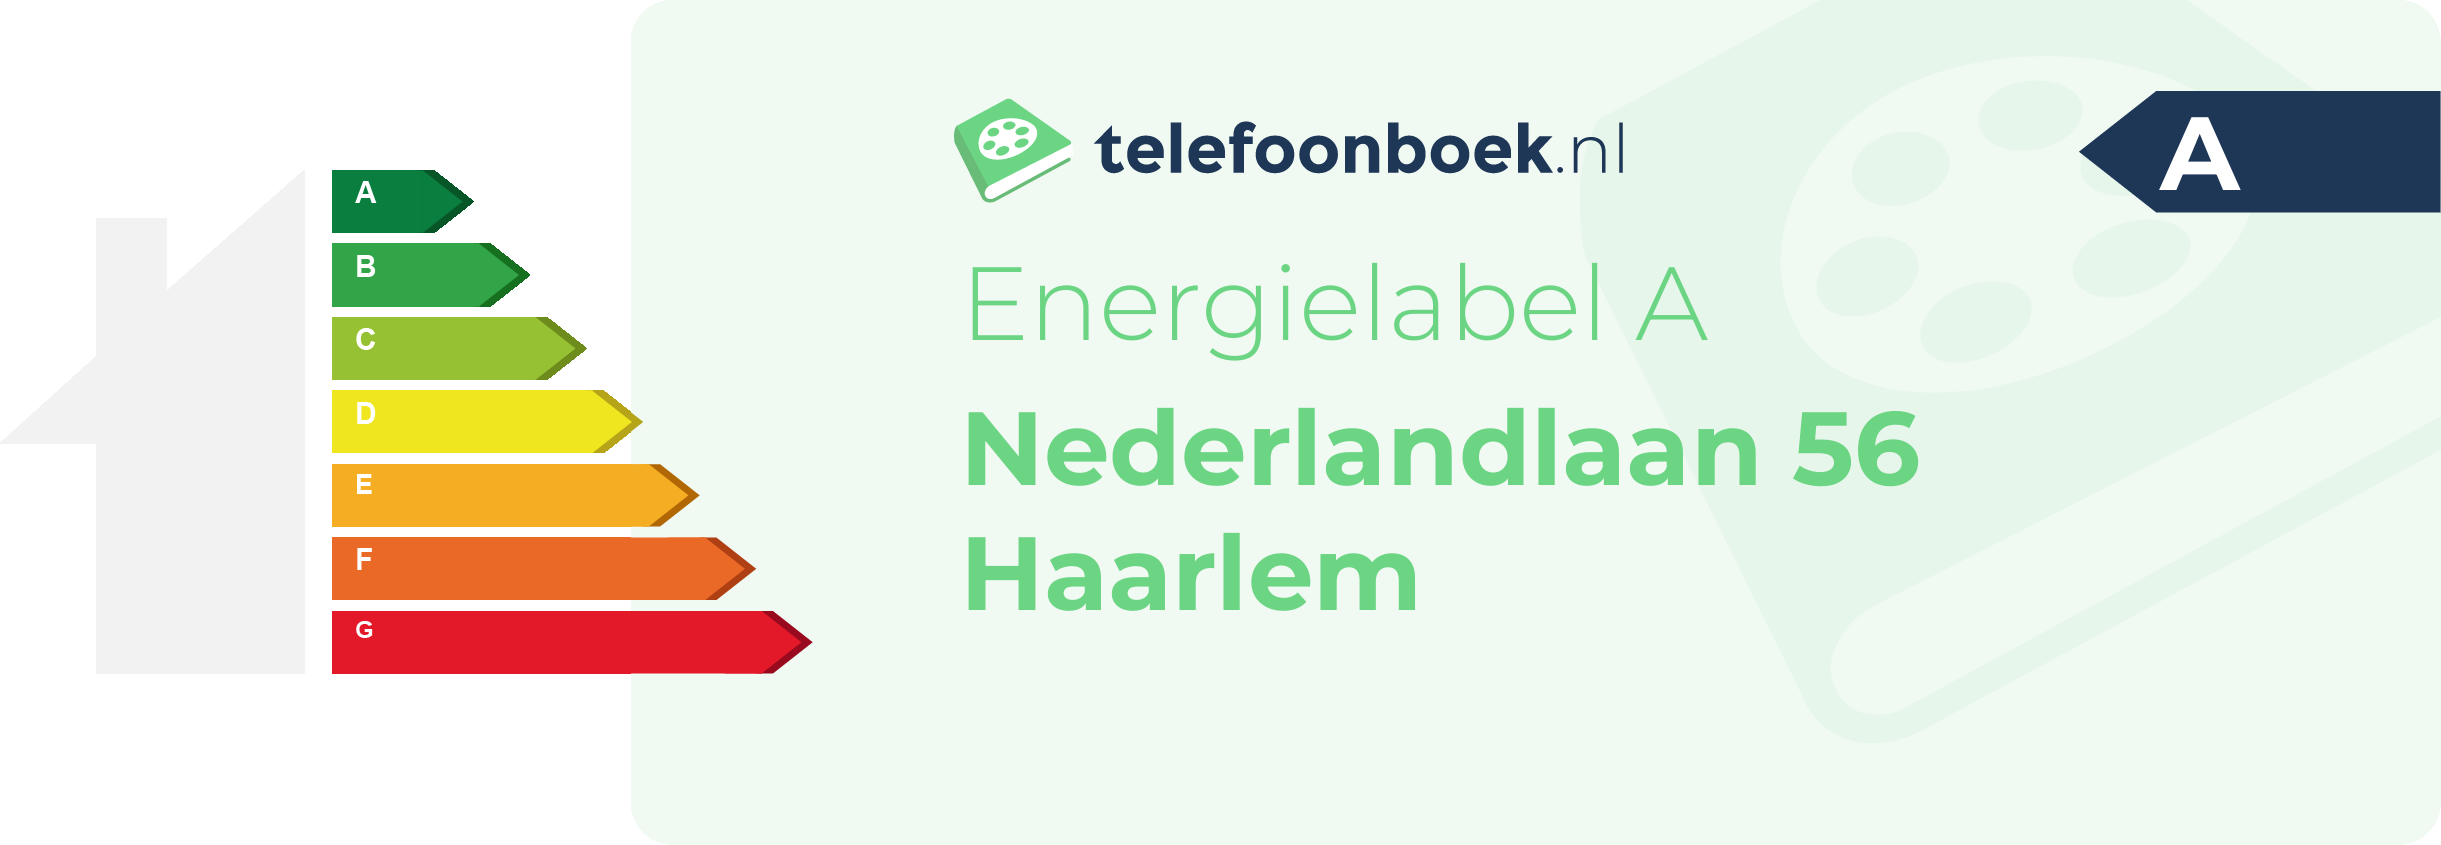 Energielabel Nederlandlaan 56 Haarlem